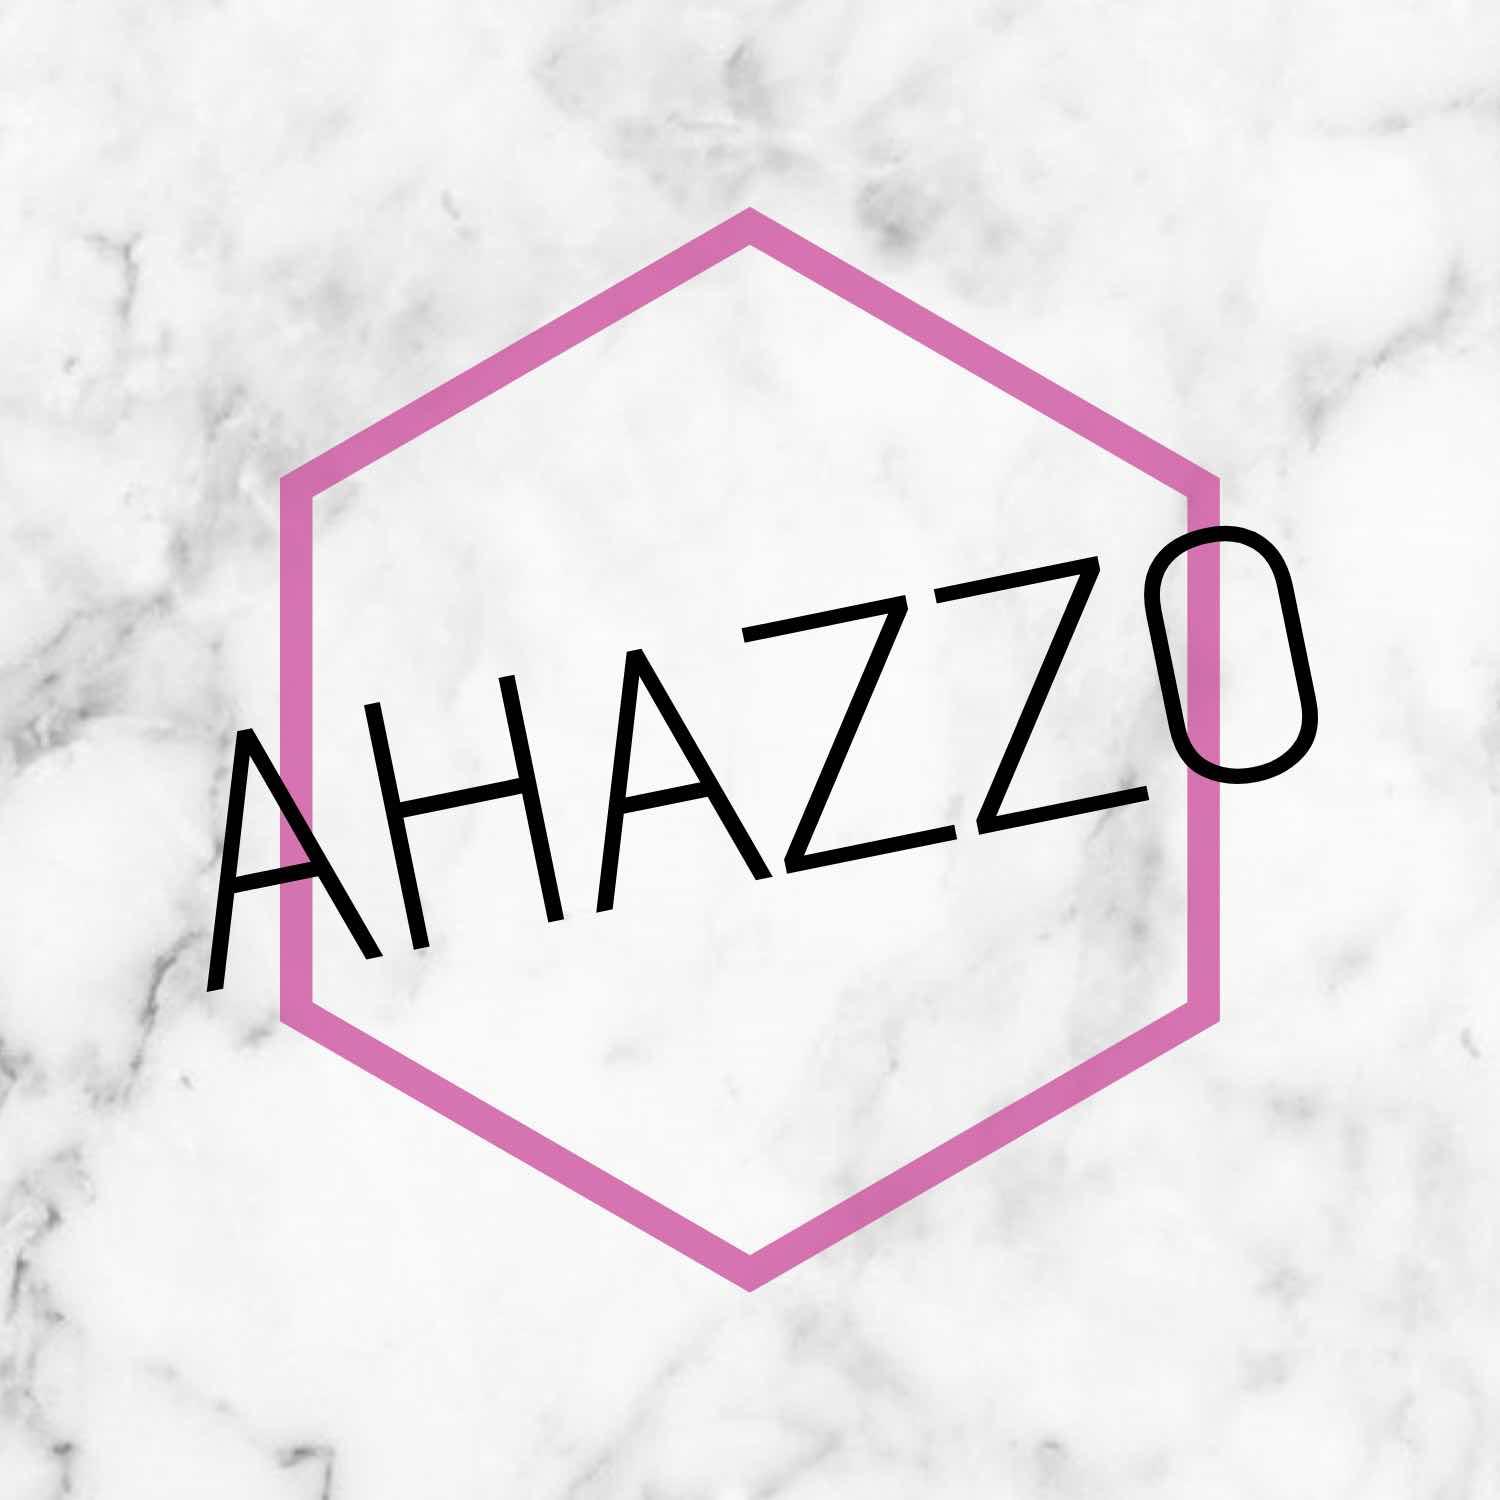 Ahazzo Store